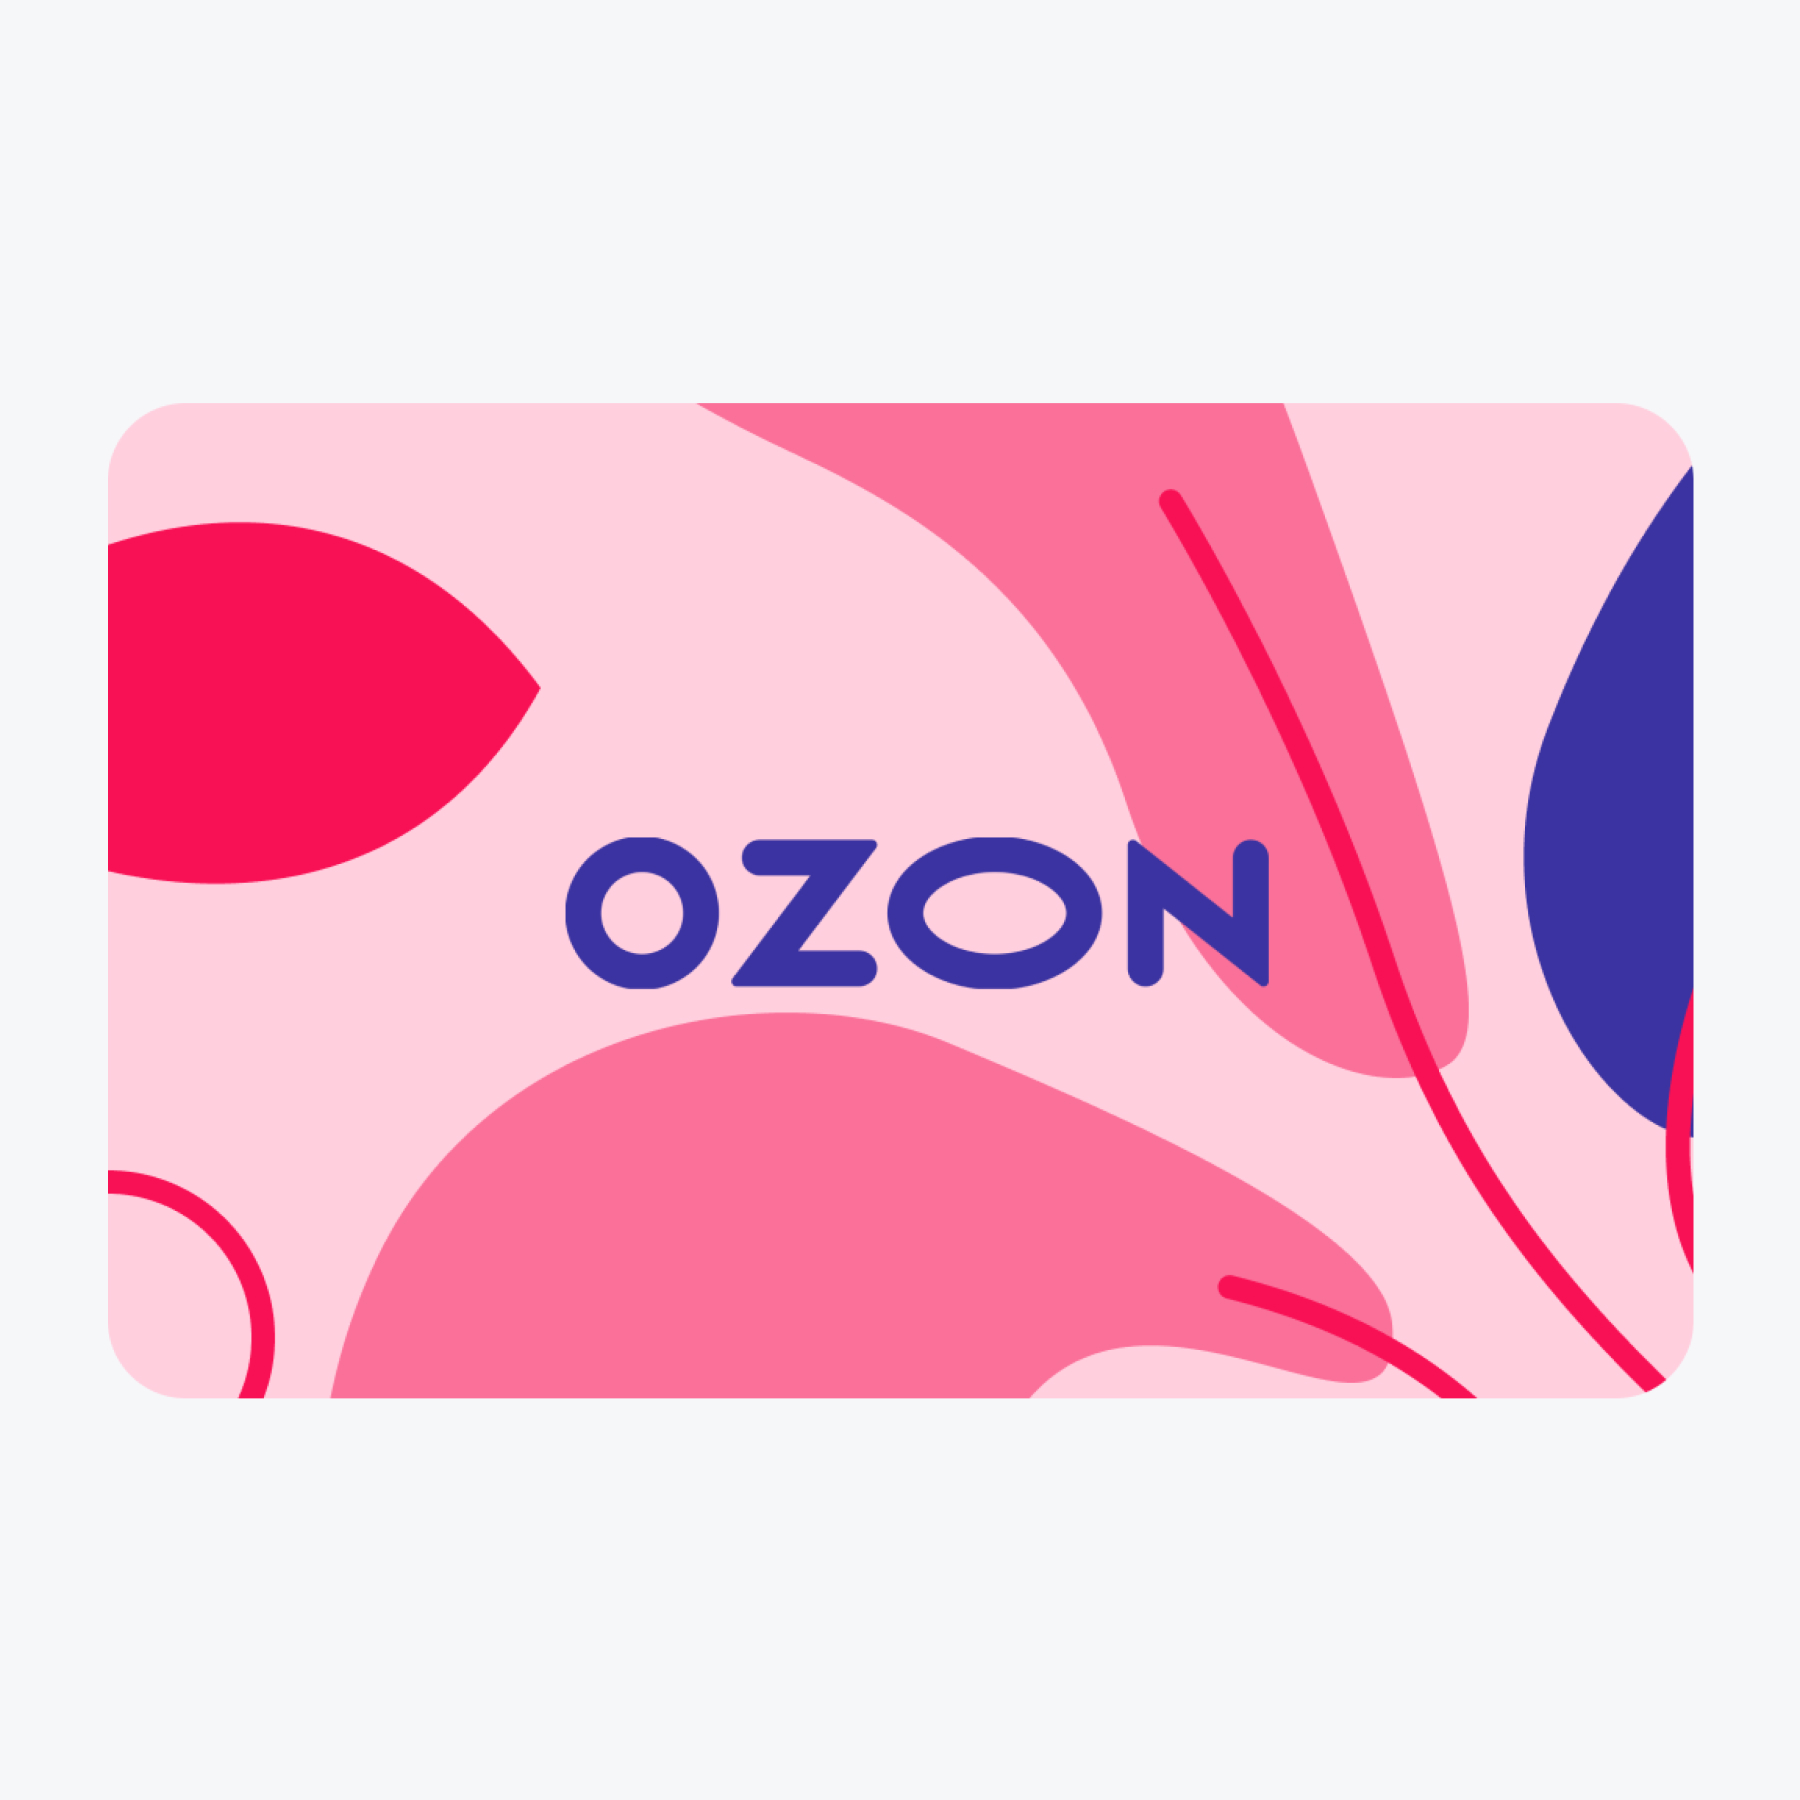 Как использовать сертификат озон при покупке. Сертификат OZON. Подарочный сертификат Озон. Подарочная карта Озон. Электронный сертификат Озон.